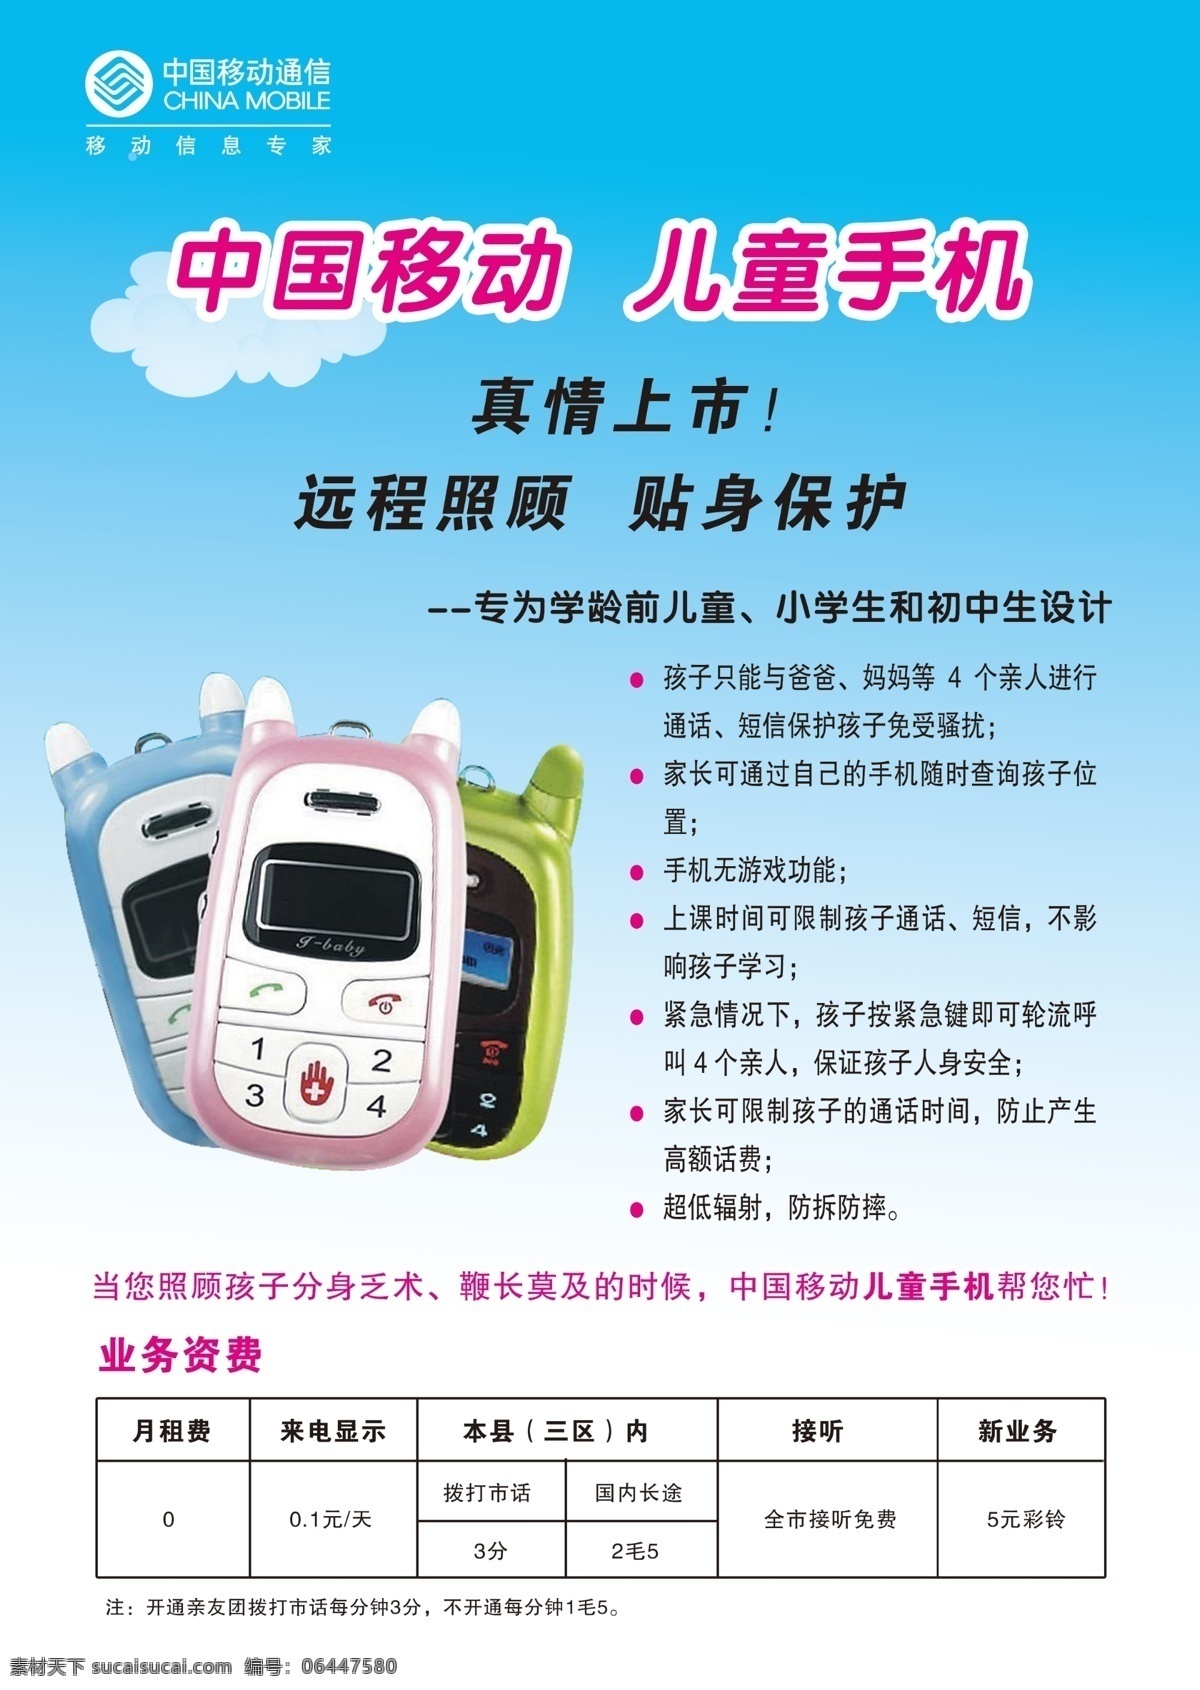 新鲜 放心 中国移动 儿童手机 远程照顾 贴身保护